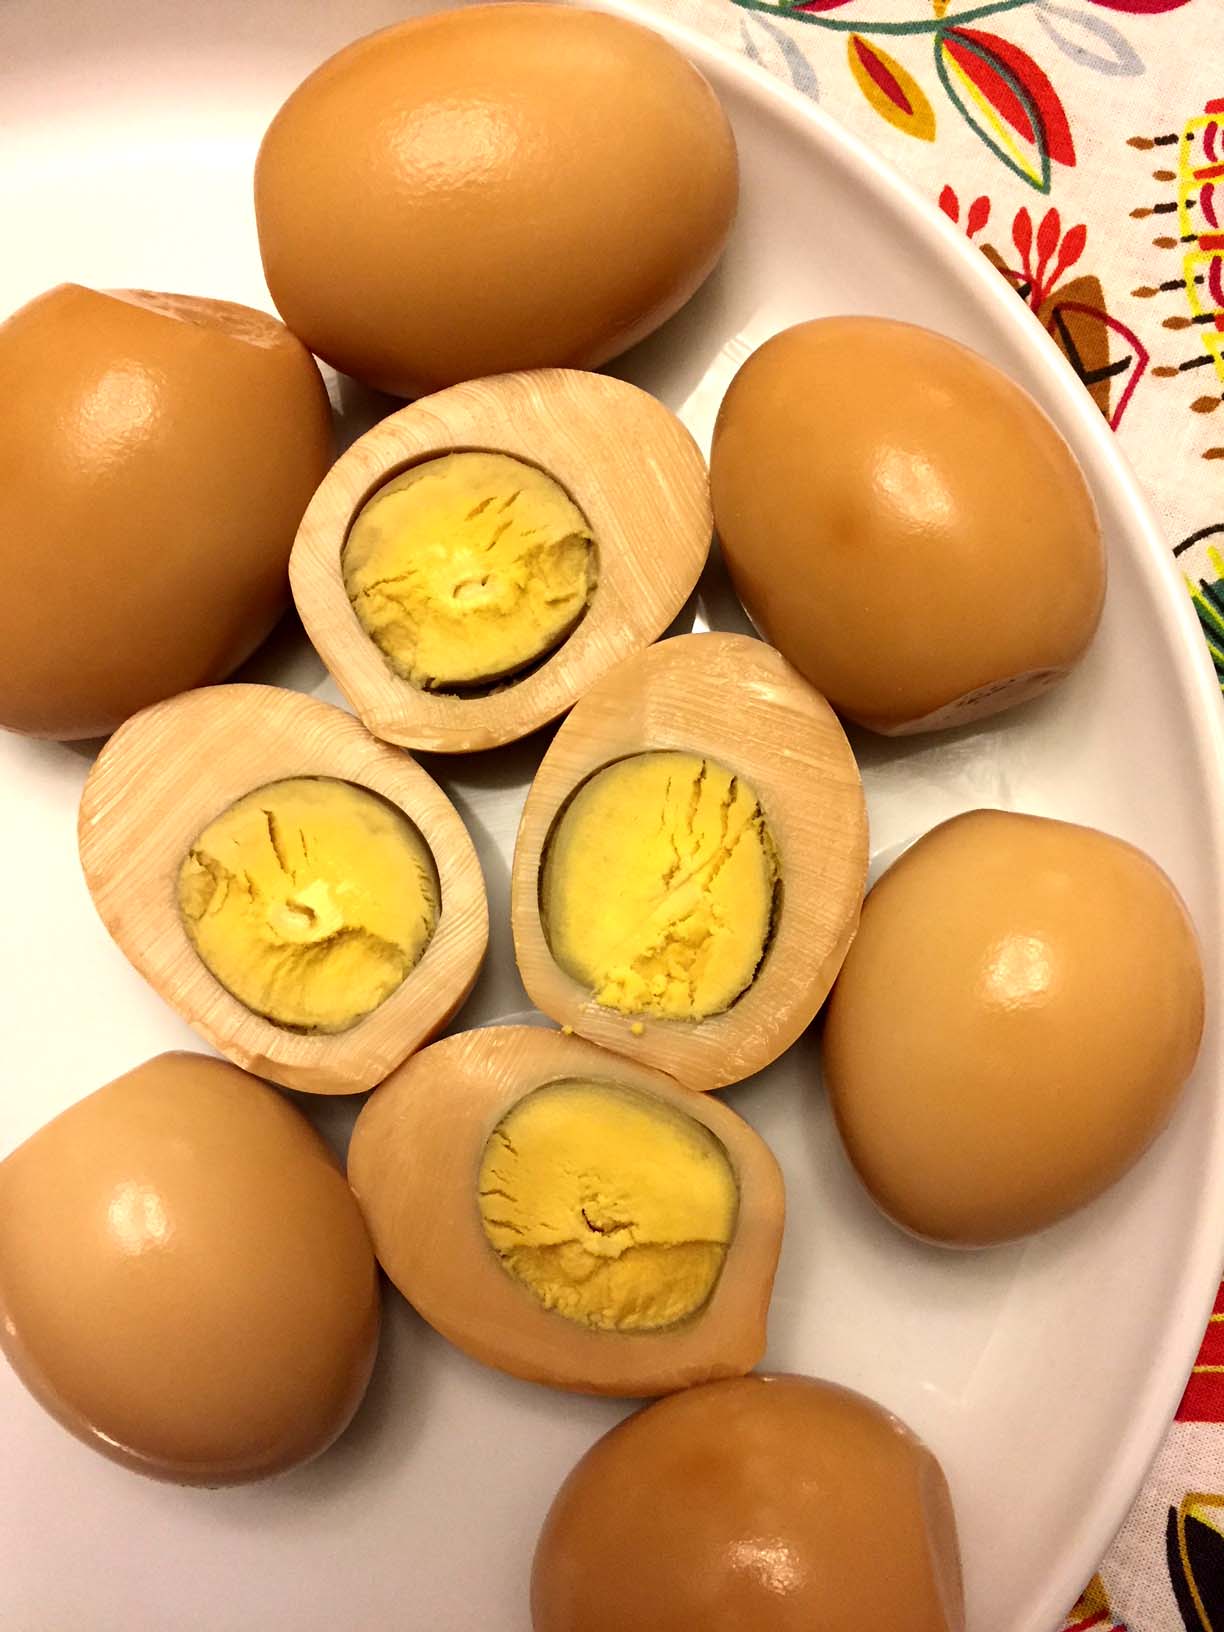 https://www.melaniecooks.com/wp-content/uploads/2018/02/korean_eggs_presure_cooker.jpg